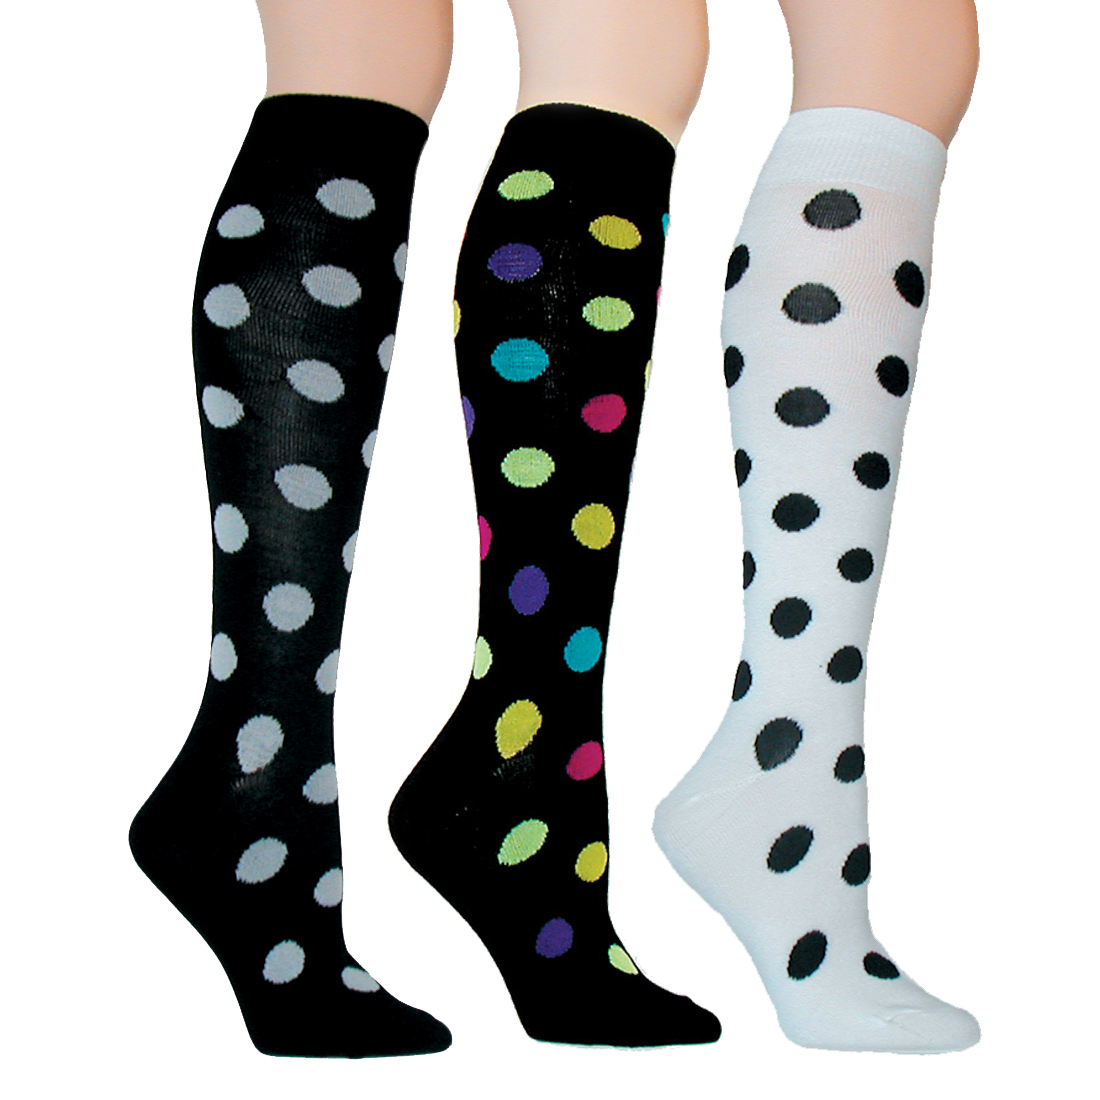 Mysocks Unisex Knee High Long Socks Polka Dot Design 